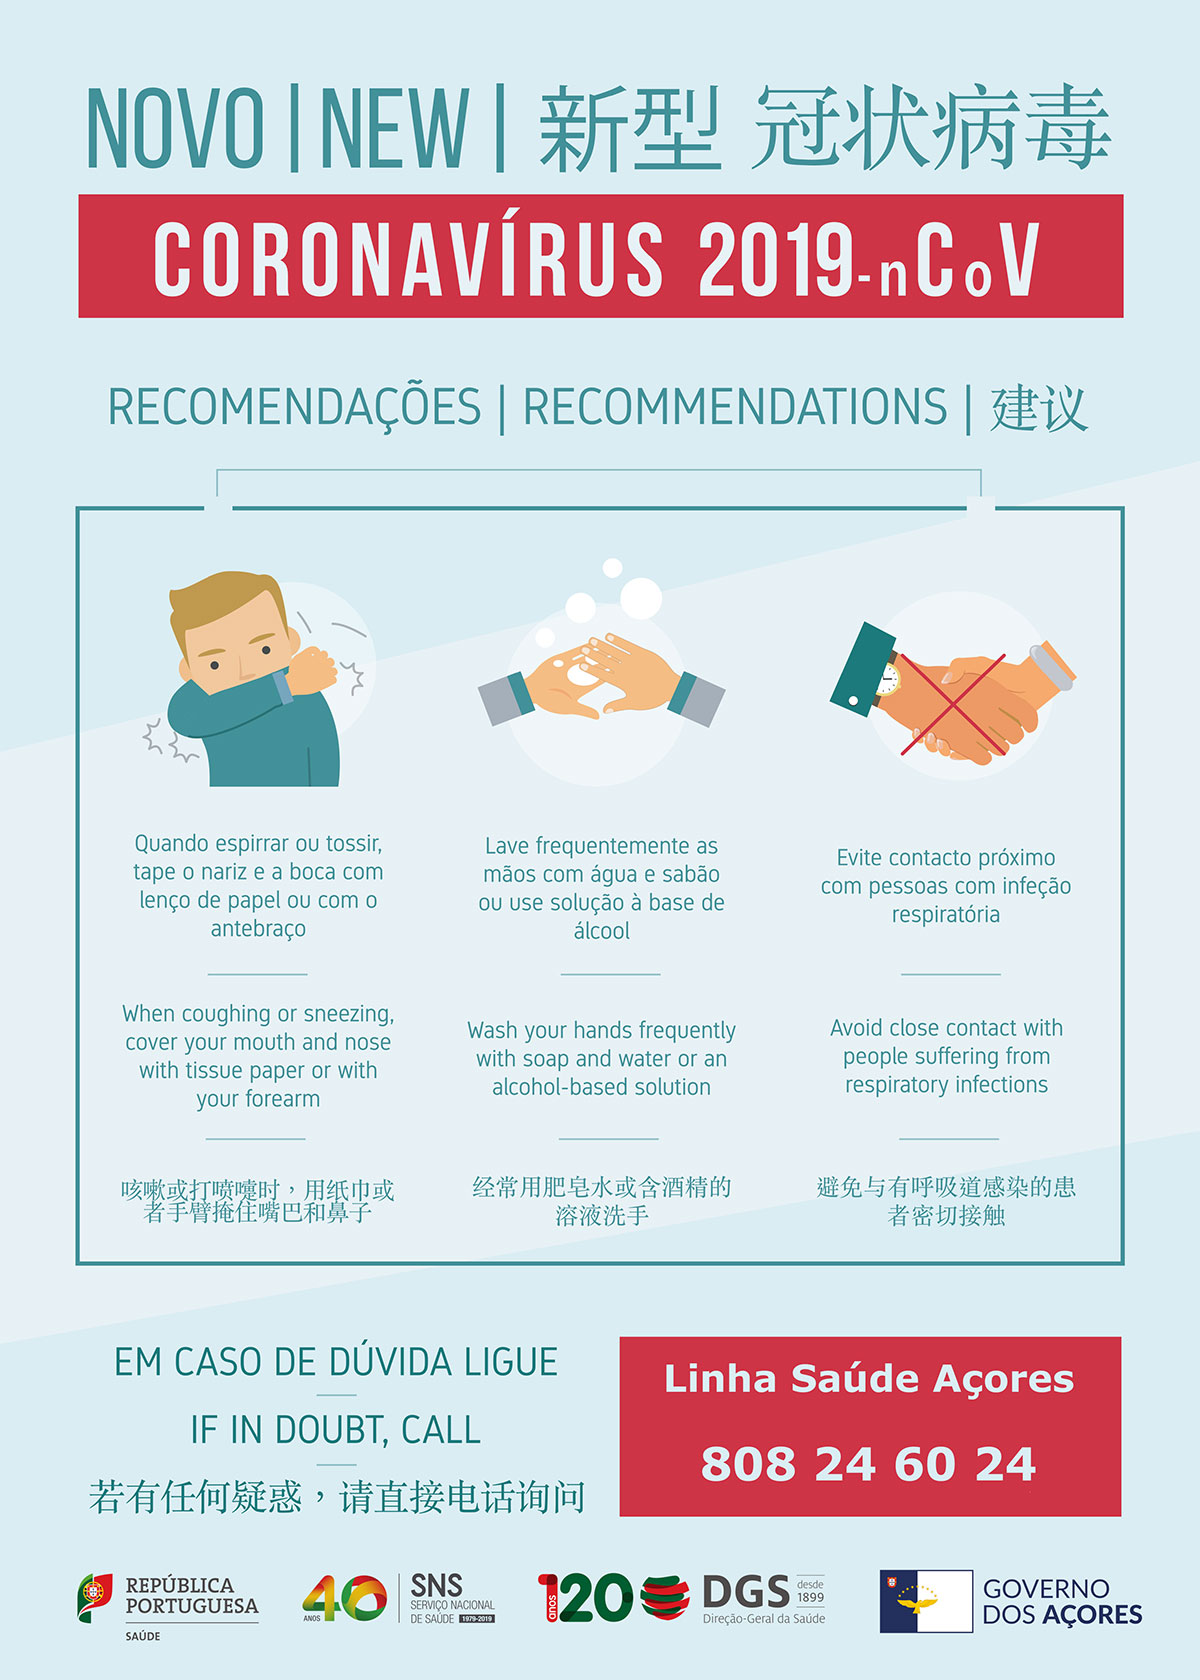 COVID-19 / Corona Virus Açores - Recomendações